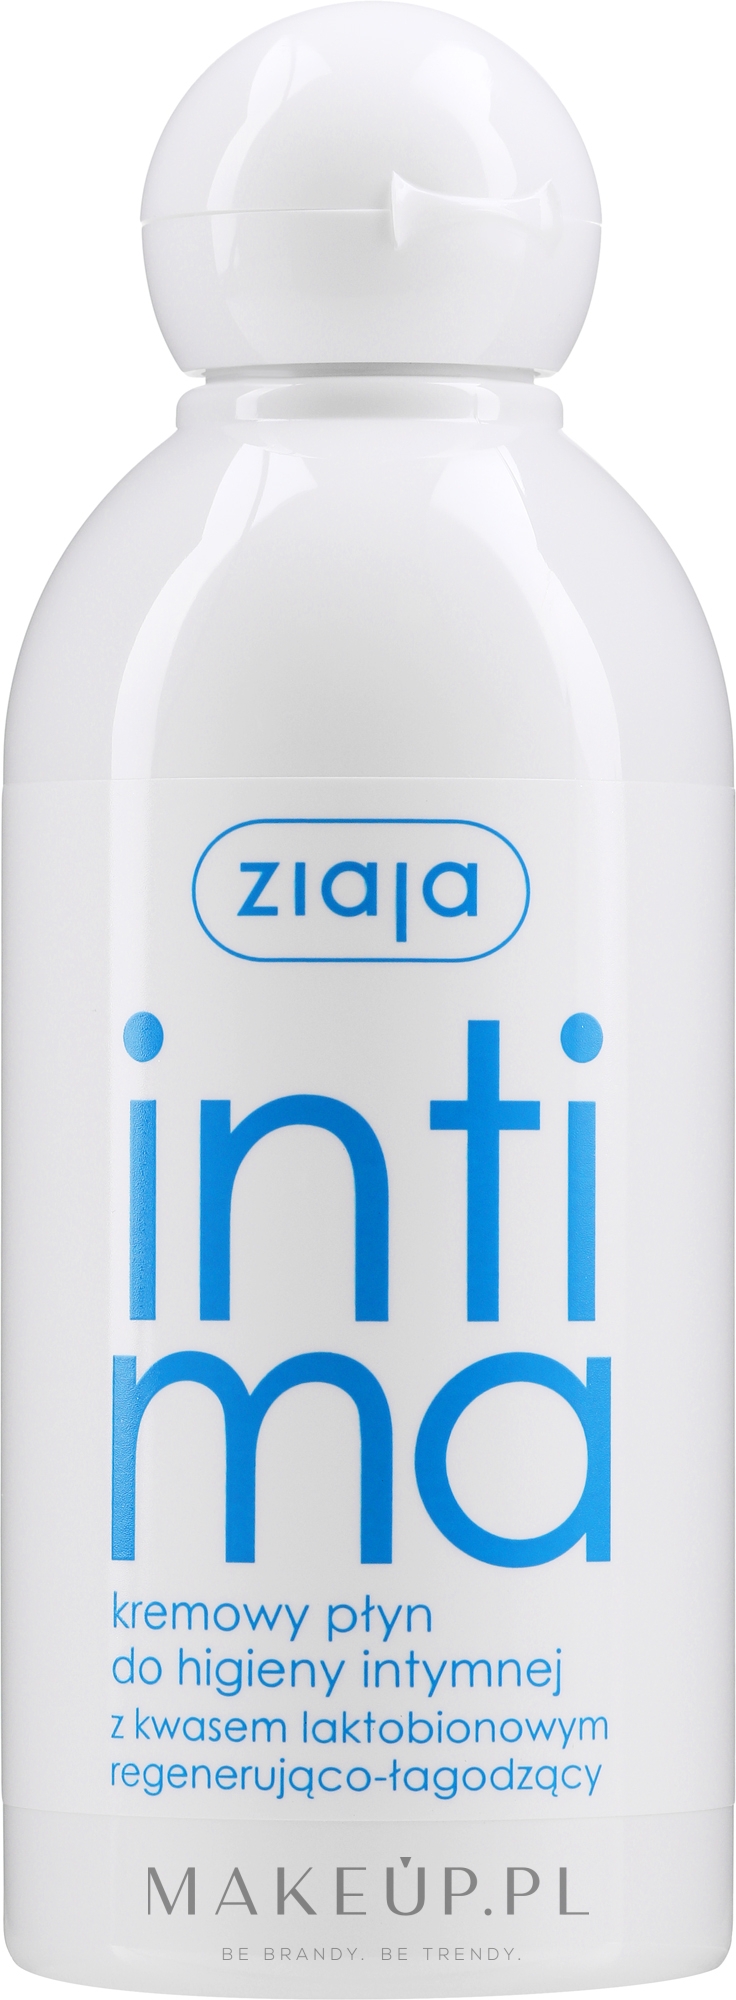 Kremowy płyn do higieny intymnej z kwasem laktobionowym - Ziaja Intima — Zdjęcie 200 ml